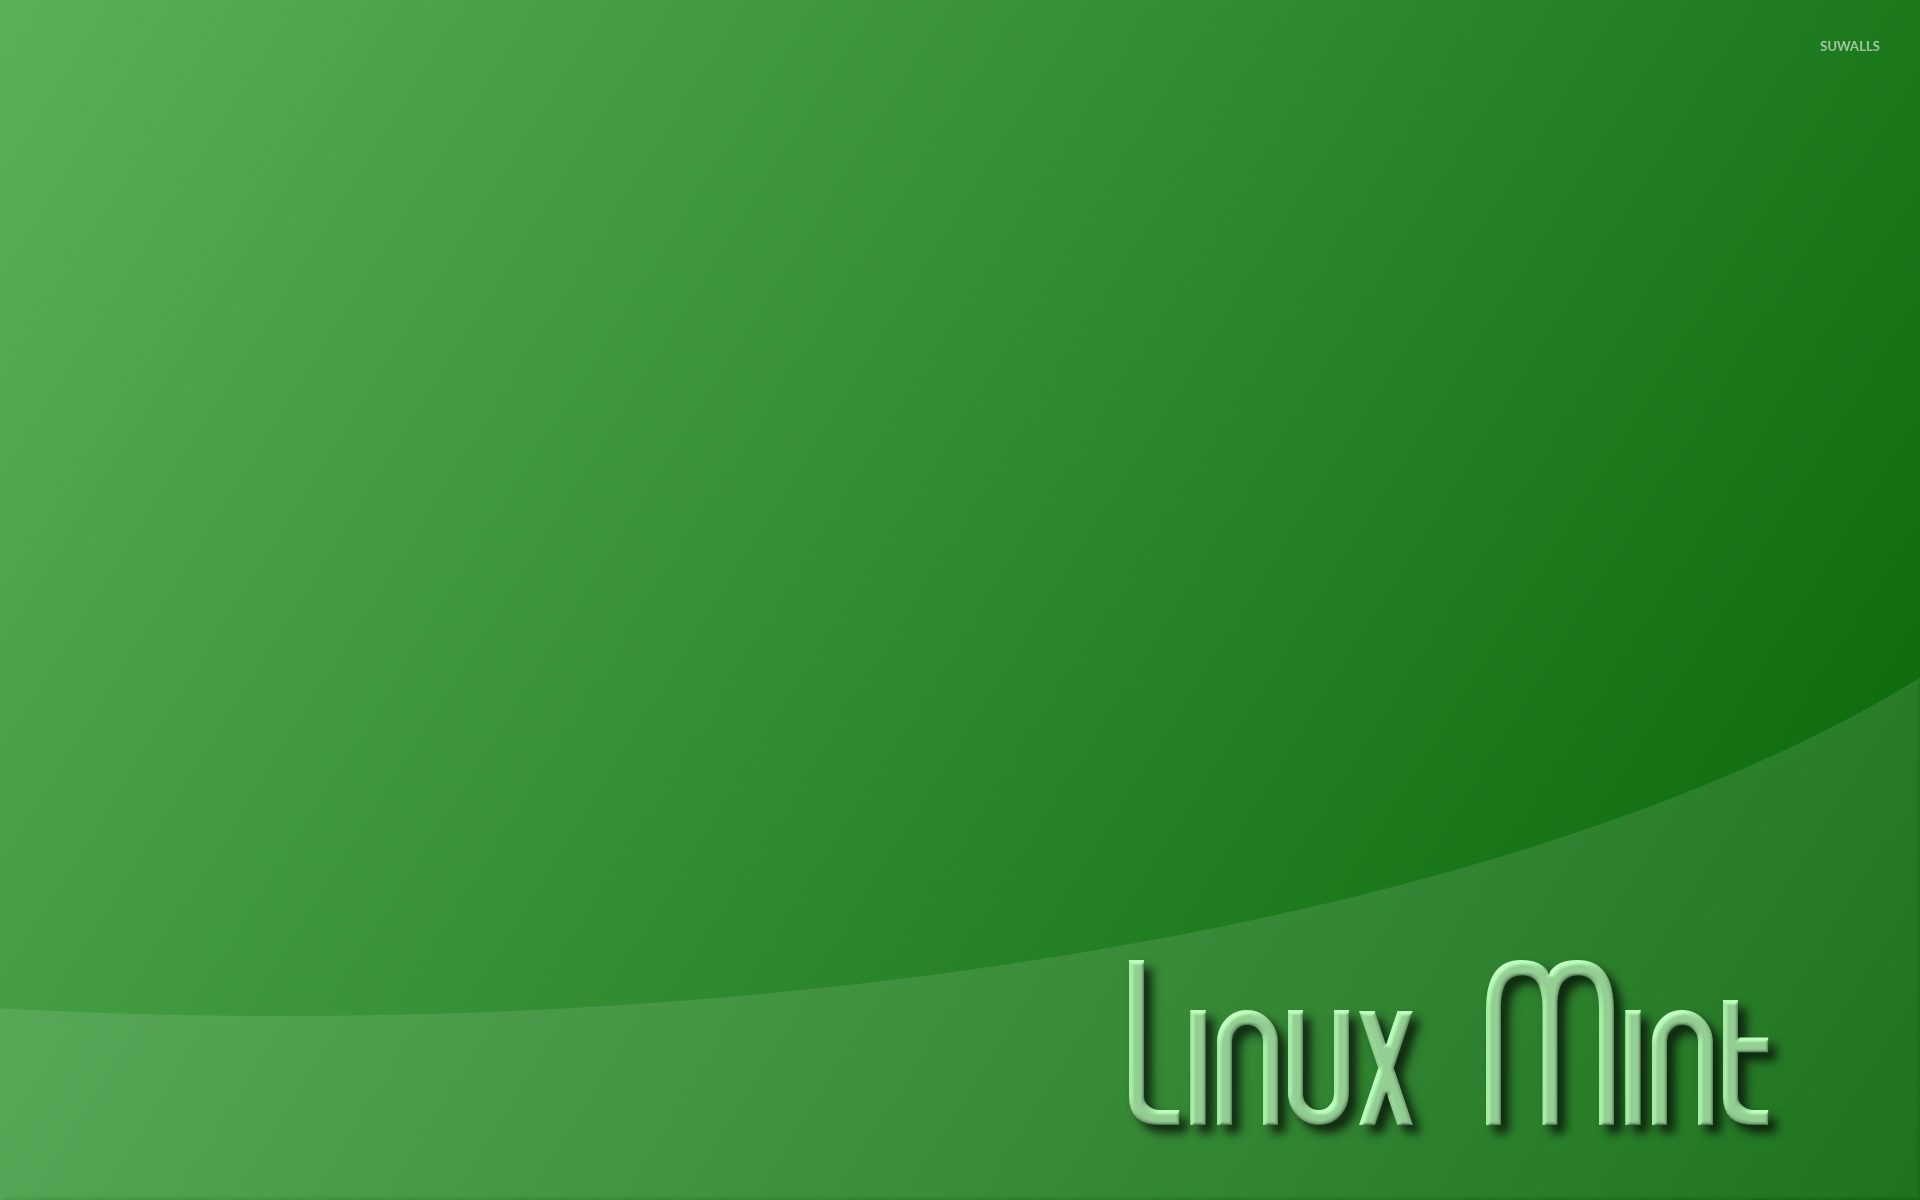 Hình nền máy tính có liên quan đến Linux Mint cực kỳ đa dạng và thú vị. Tất cả những bức hình đều là những tuyệt phẩm nghệ thuật, đem lại cho bạn sự khác biệt và độc đáo. Chắc chắn bạn sẽ thích thú khi trải nghiệm những bức hình nền này.